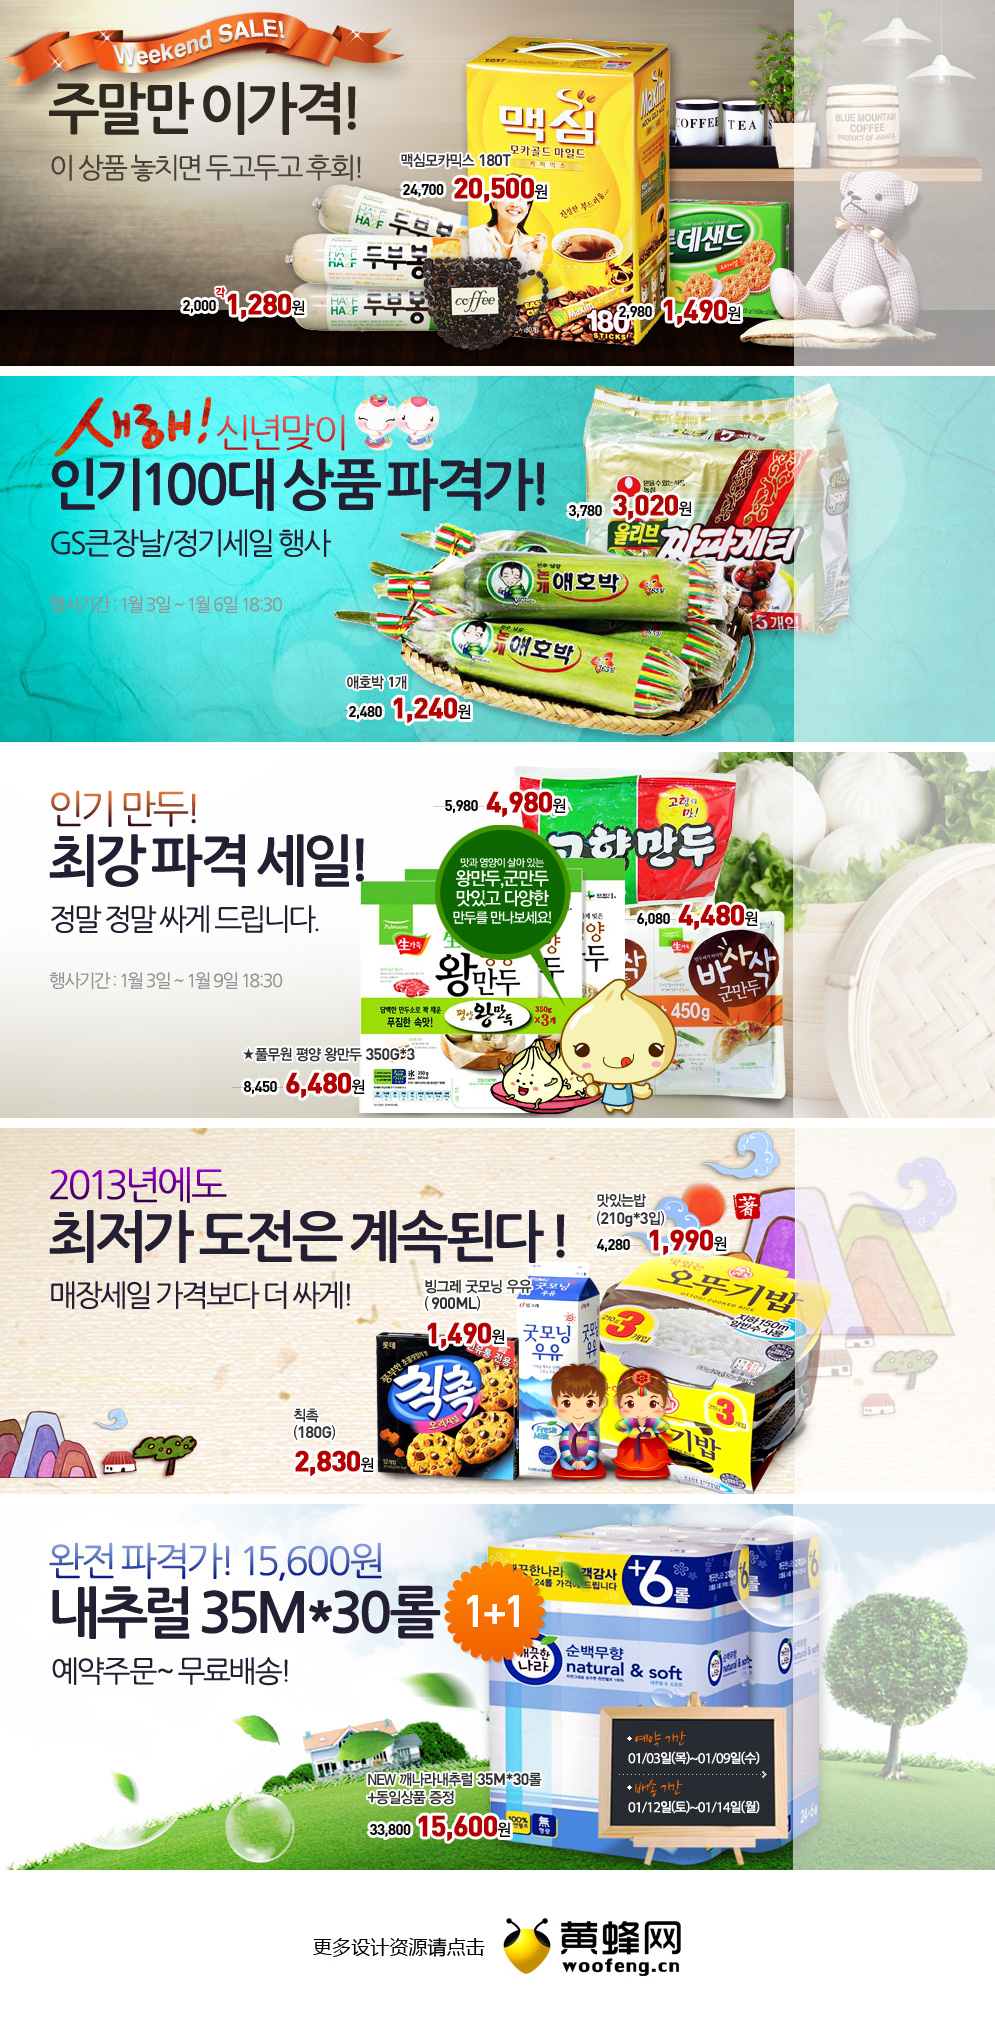 韩国食品购物网站促销广告Banner设计欣赏0105